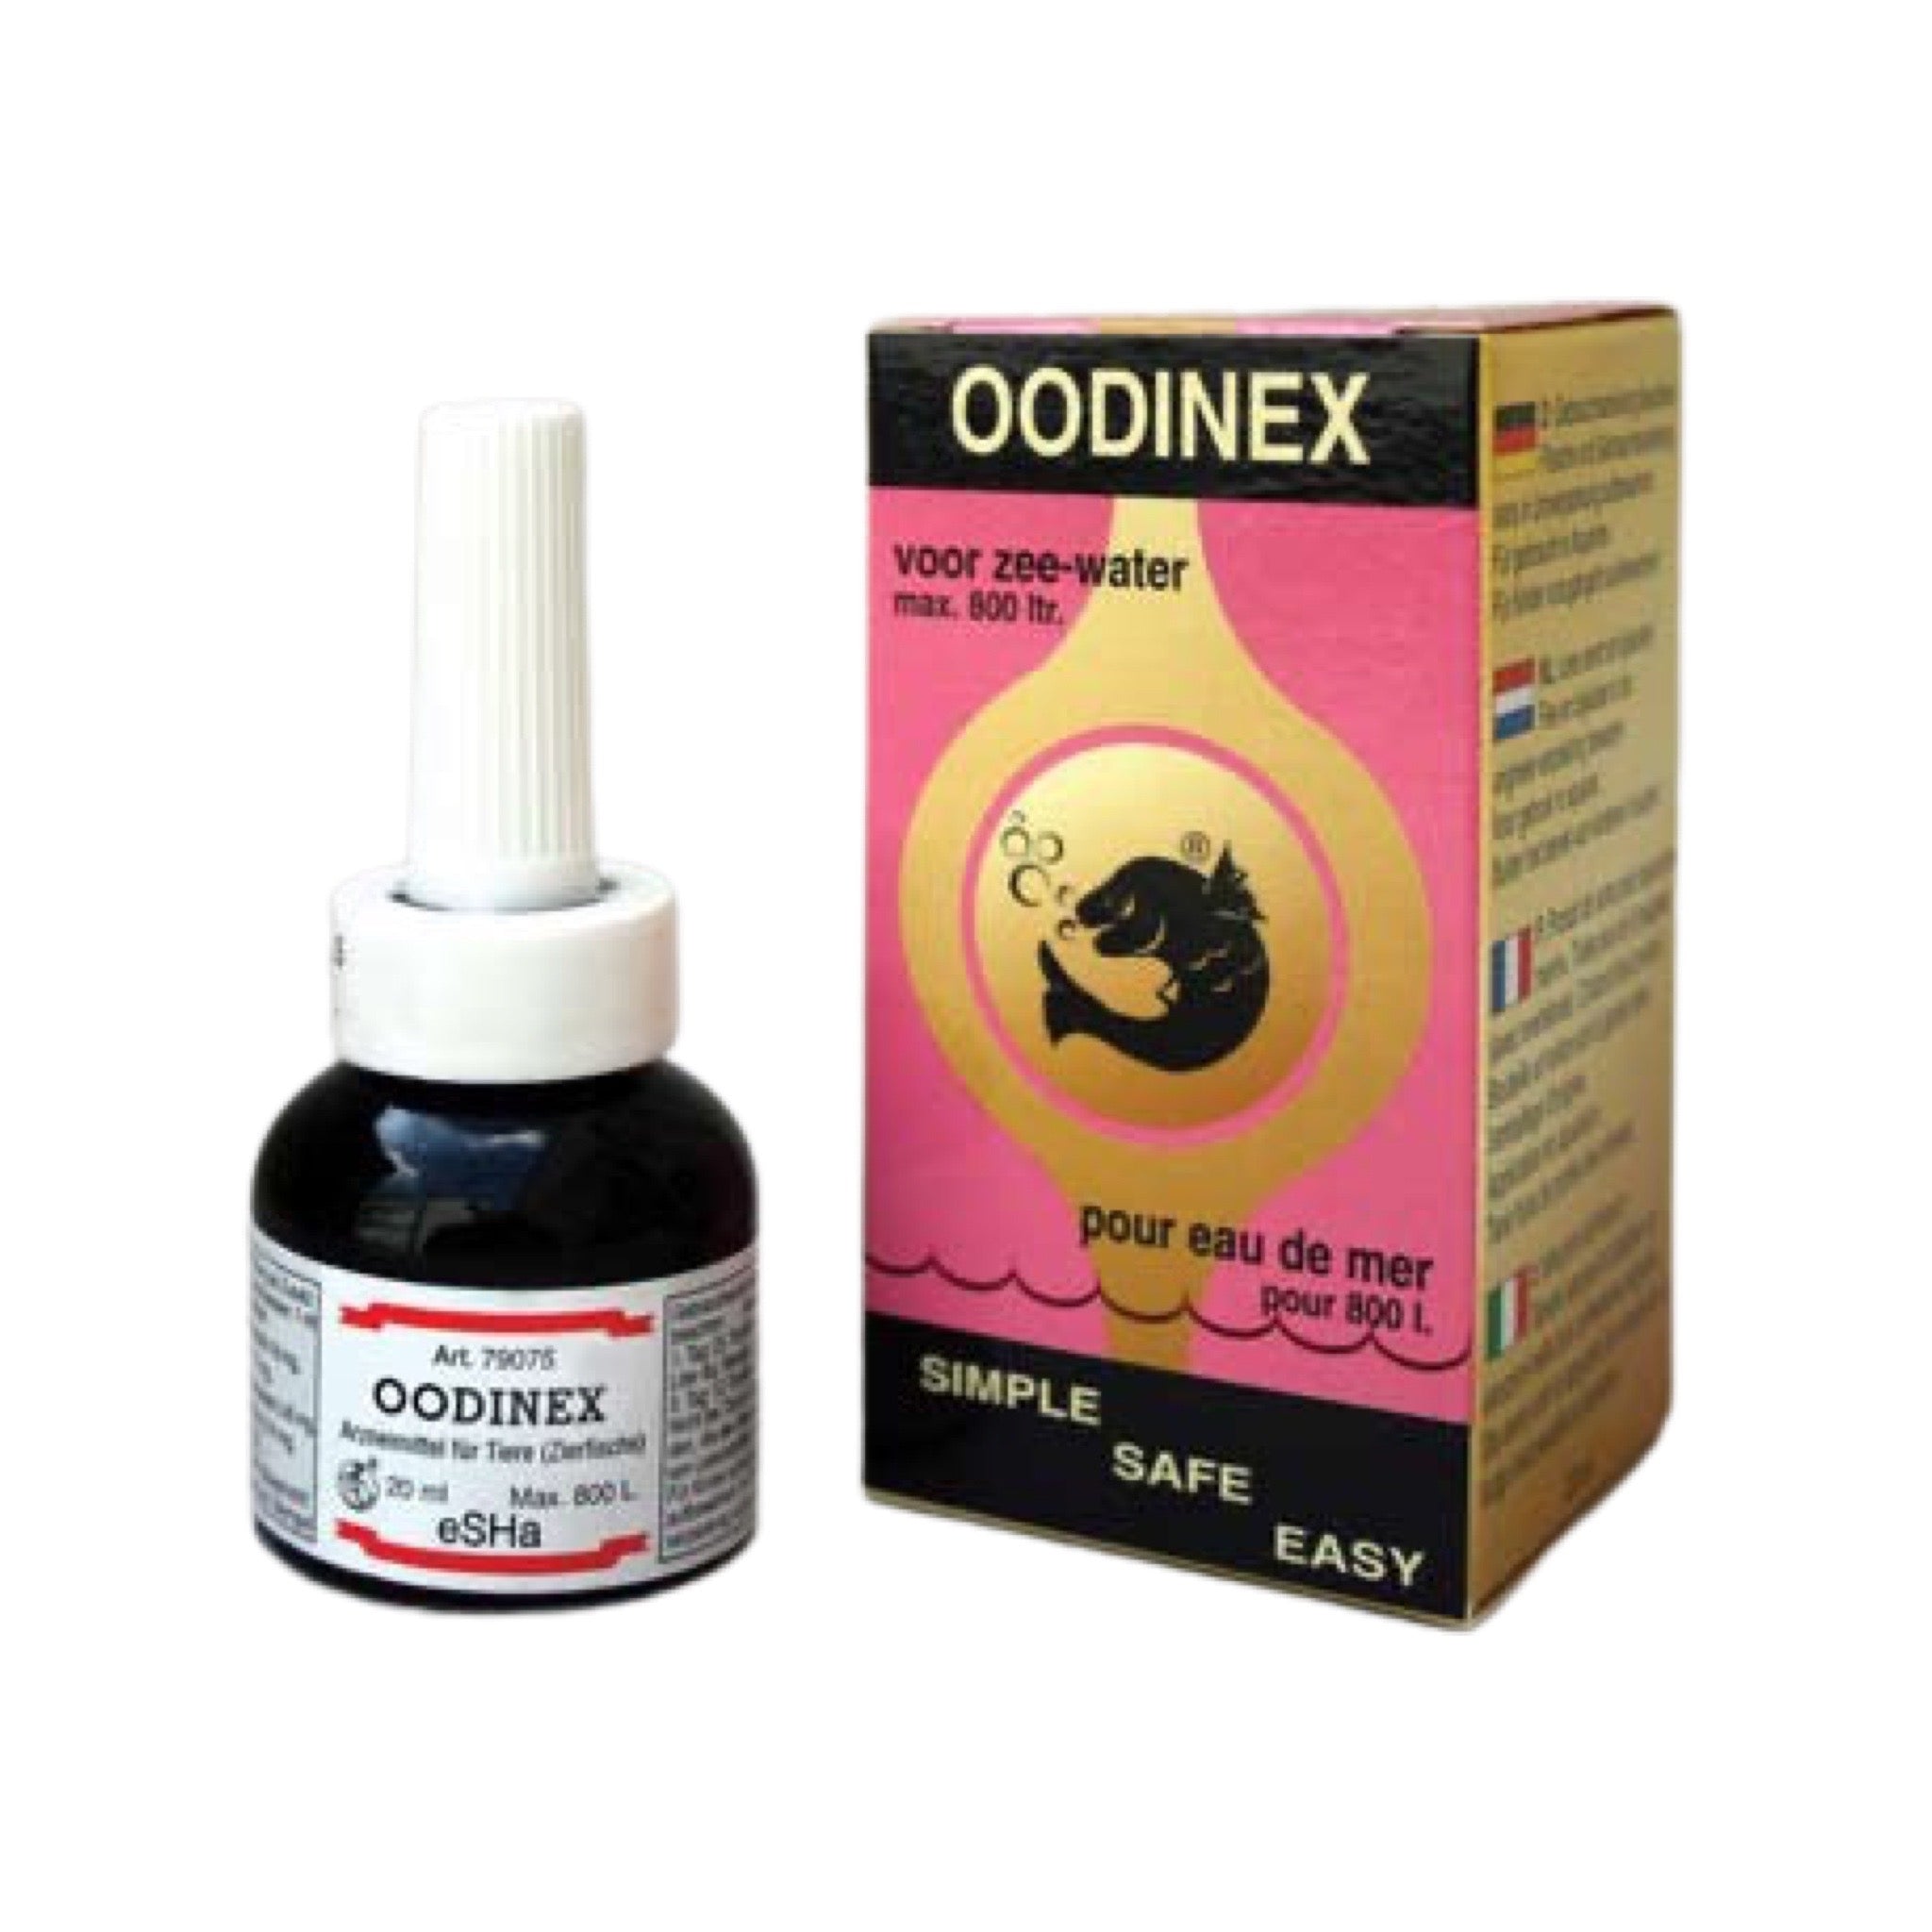 Oodinex